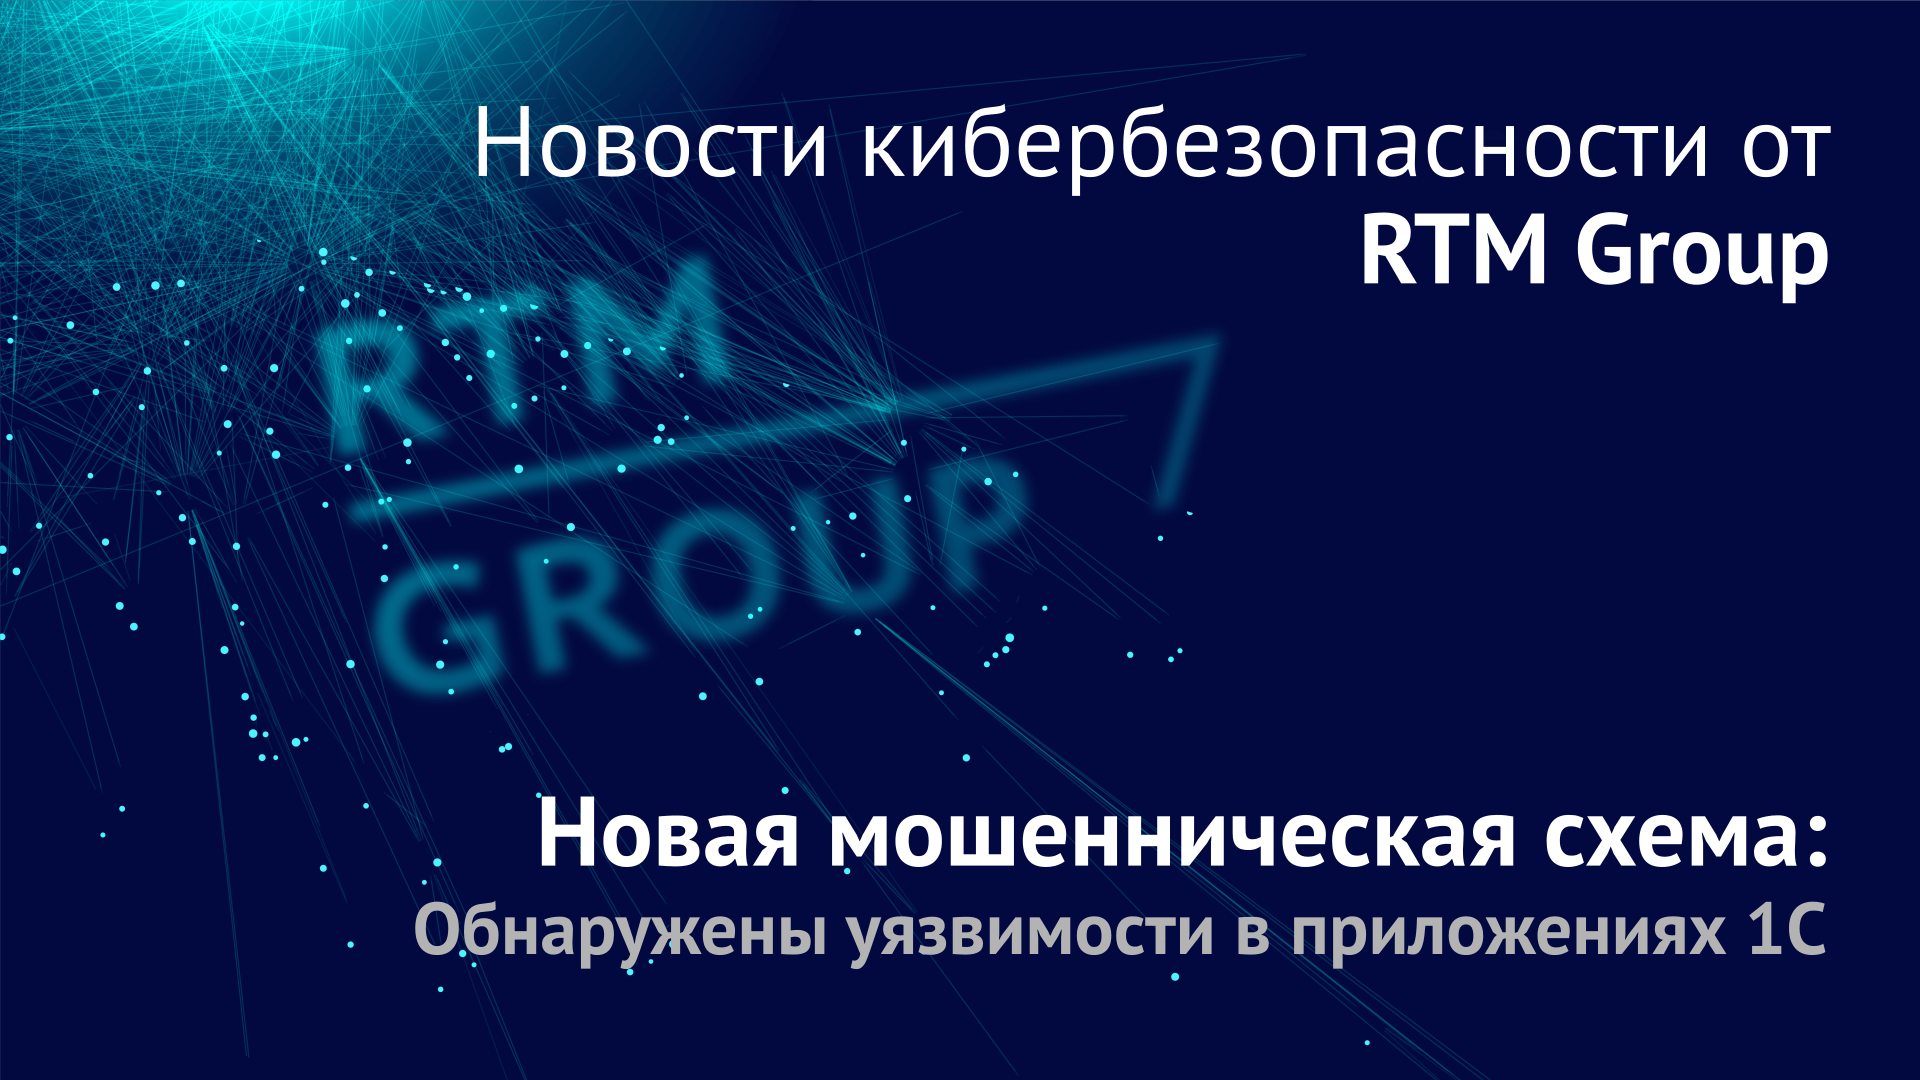 RTM Group сообщила о мошеннической схеме, связанной с приложениями 1С